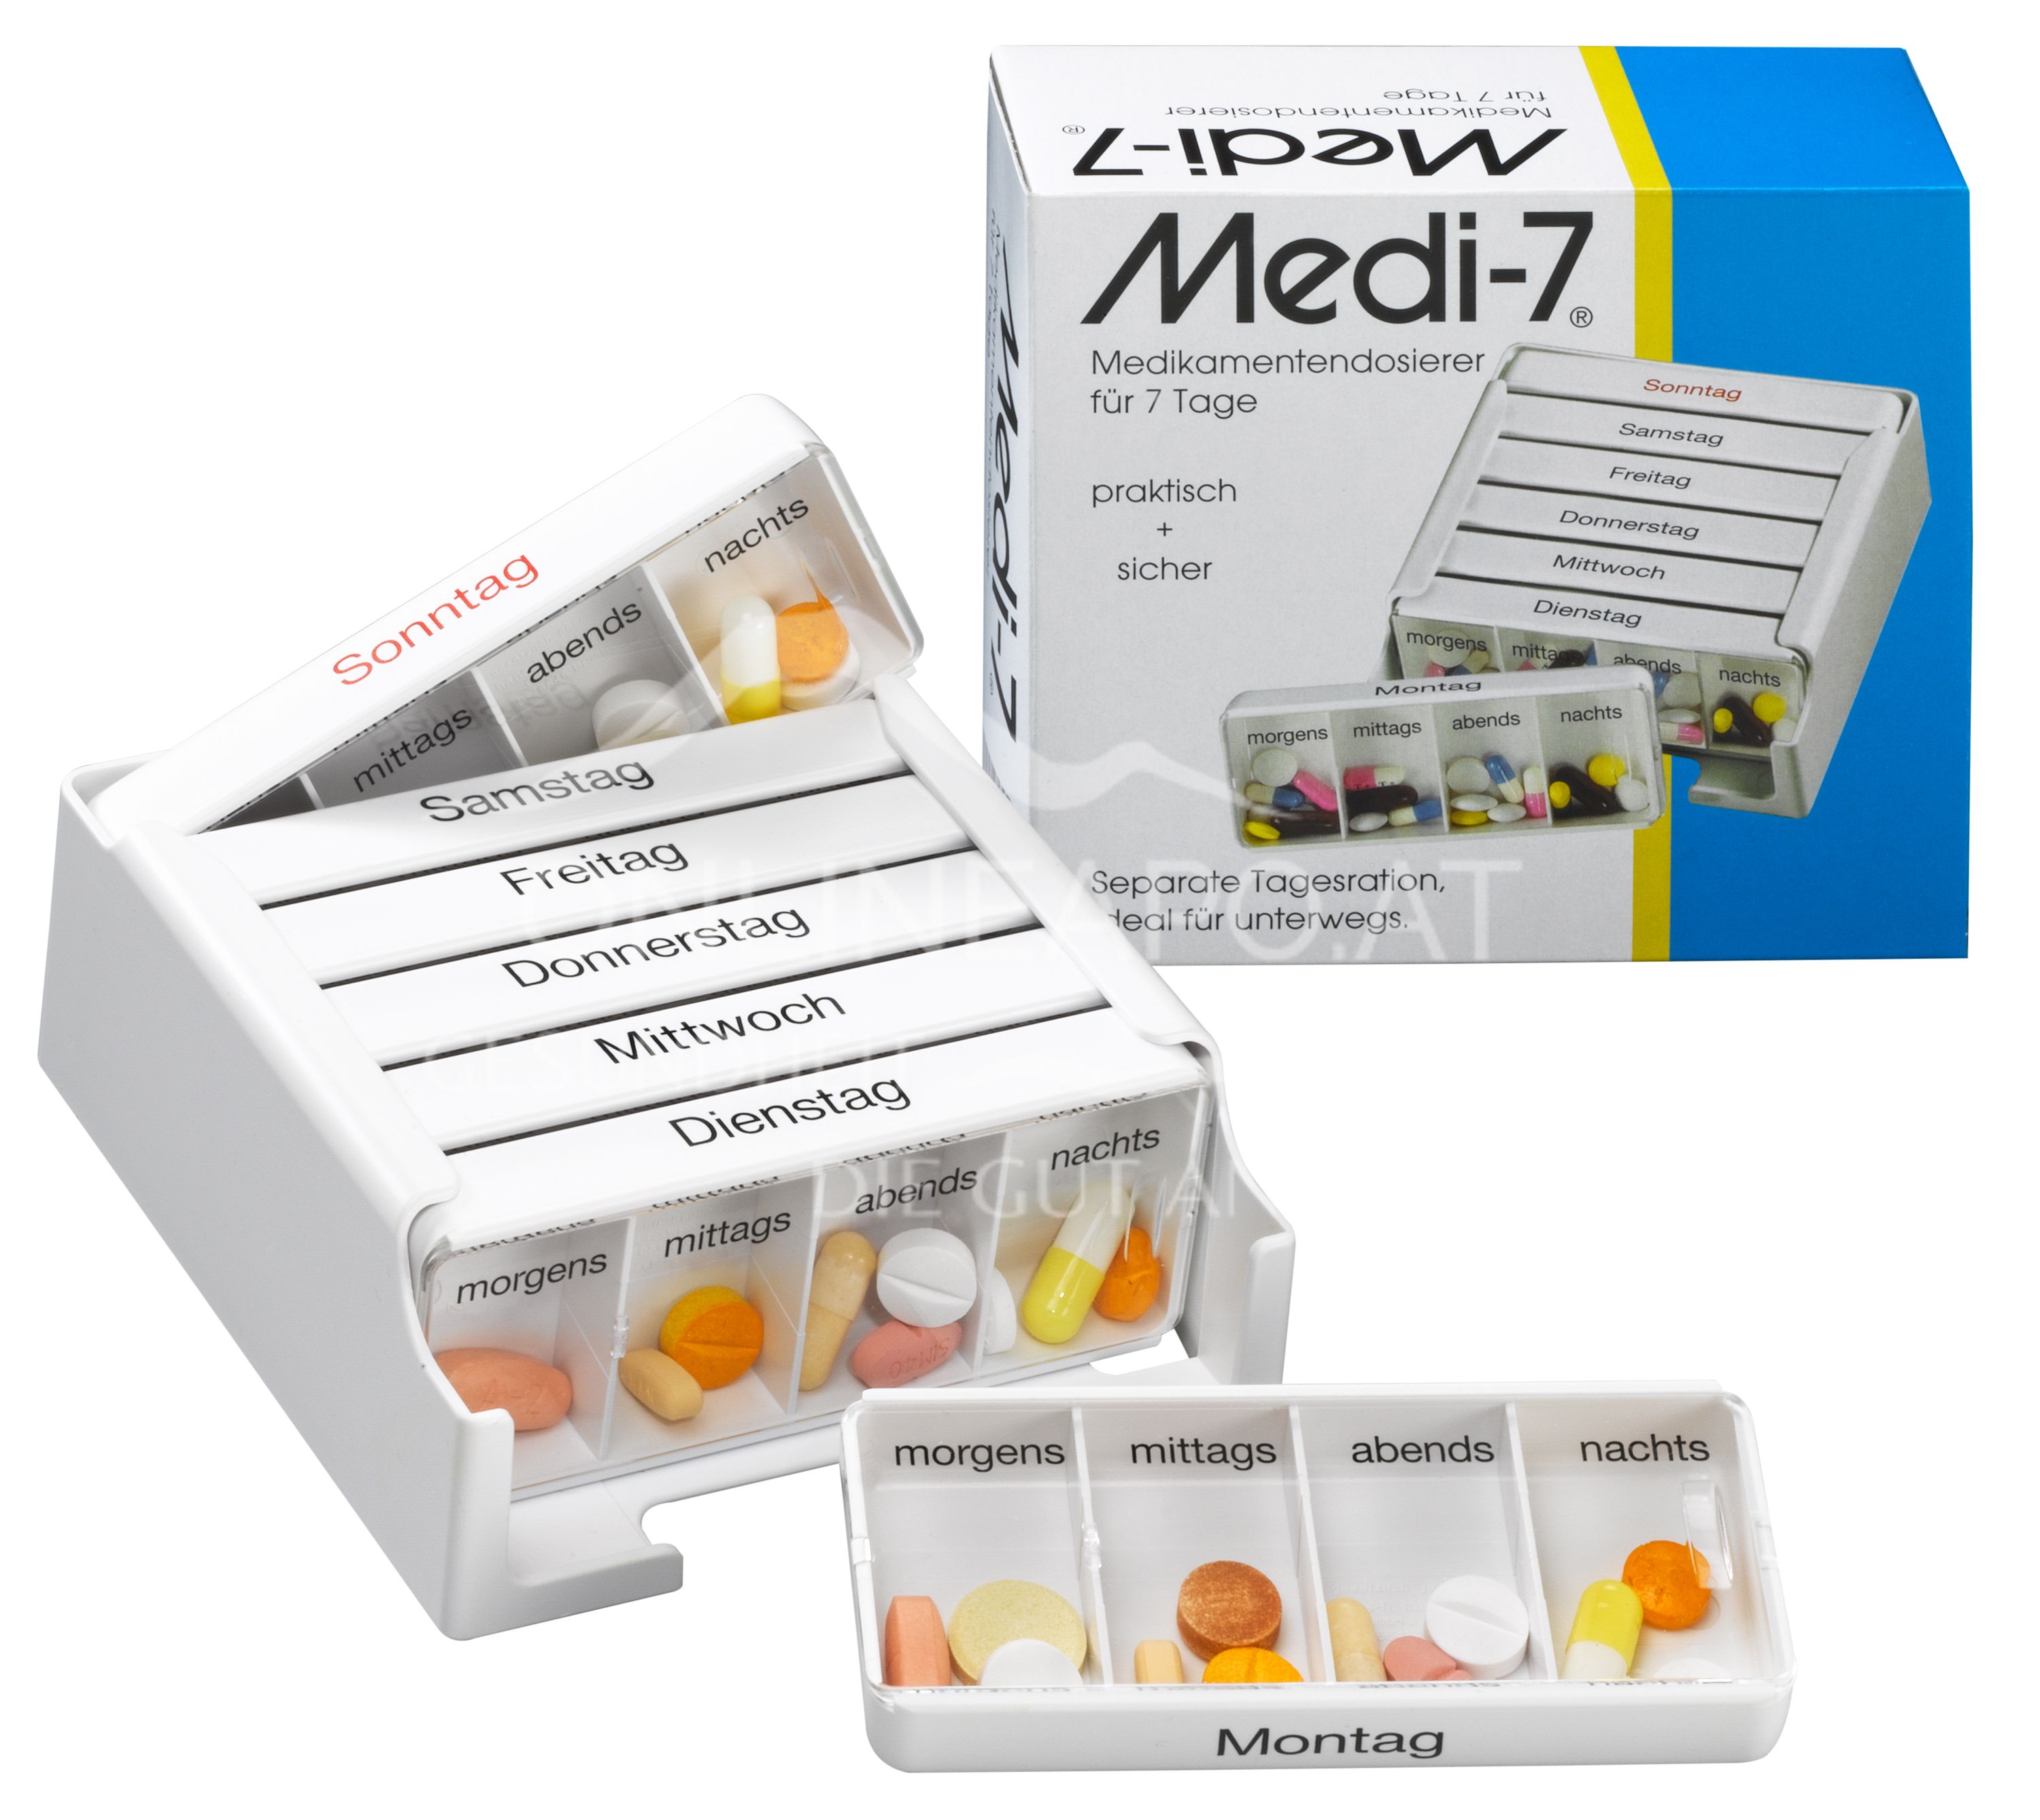 Medi-7 Medikamentendosierer für 7 Tage - Weiss